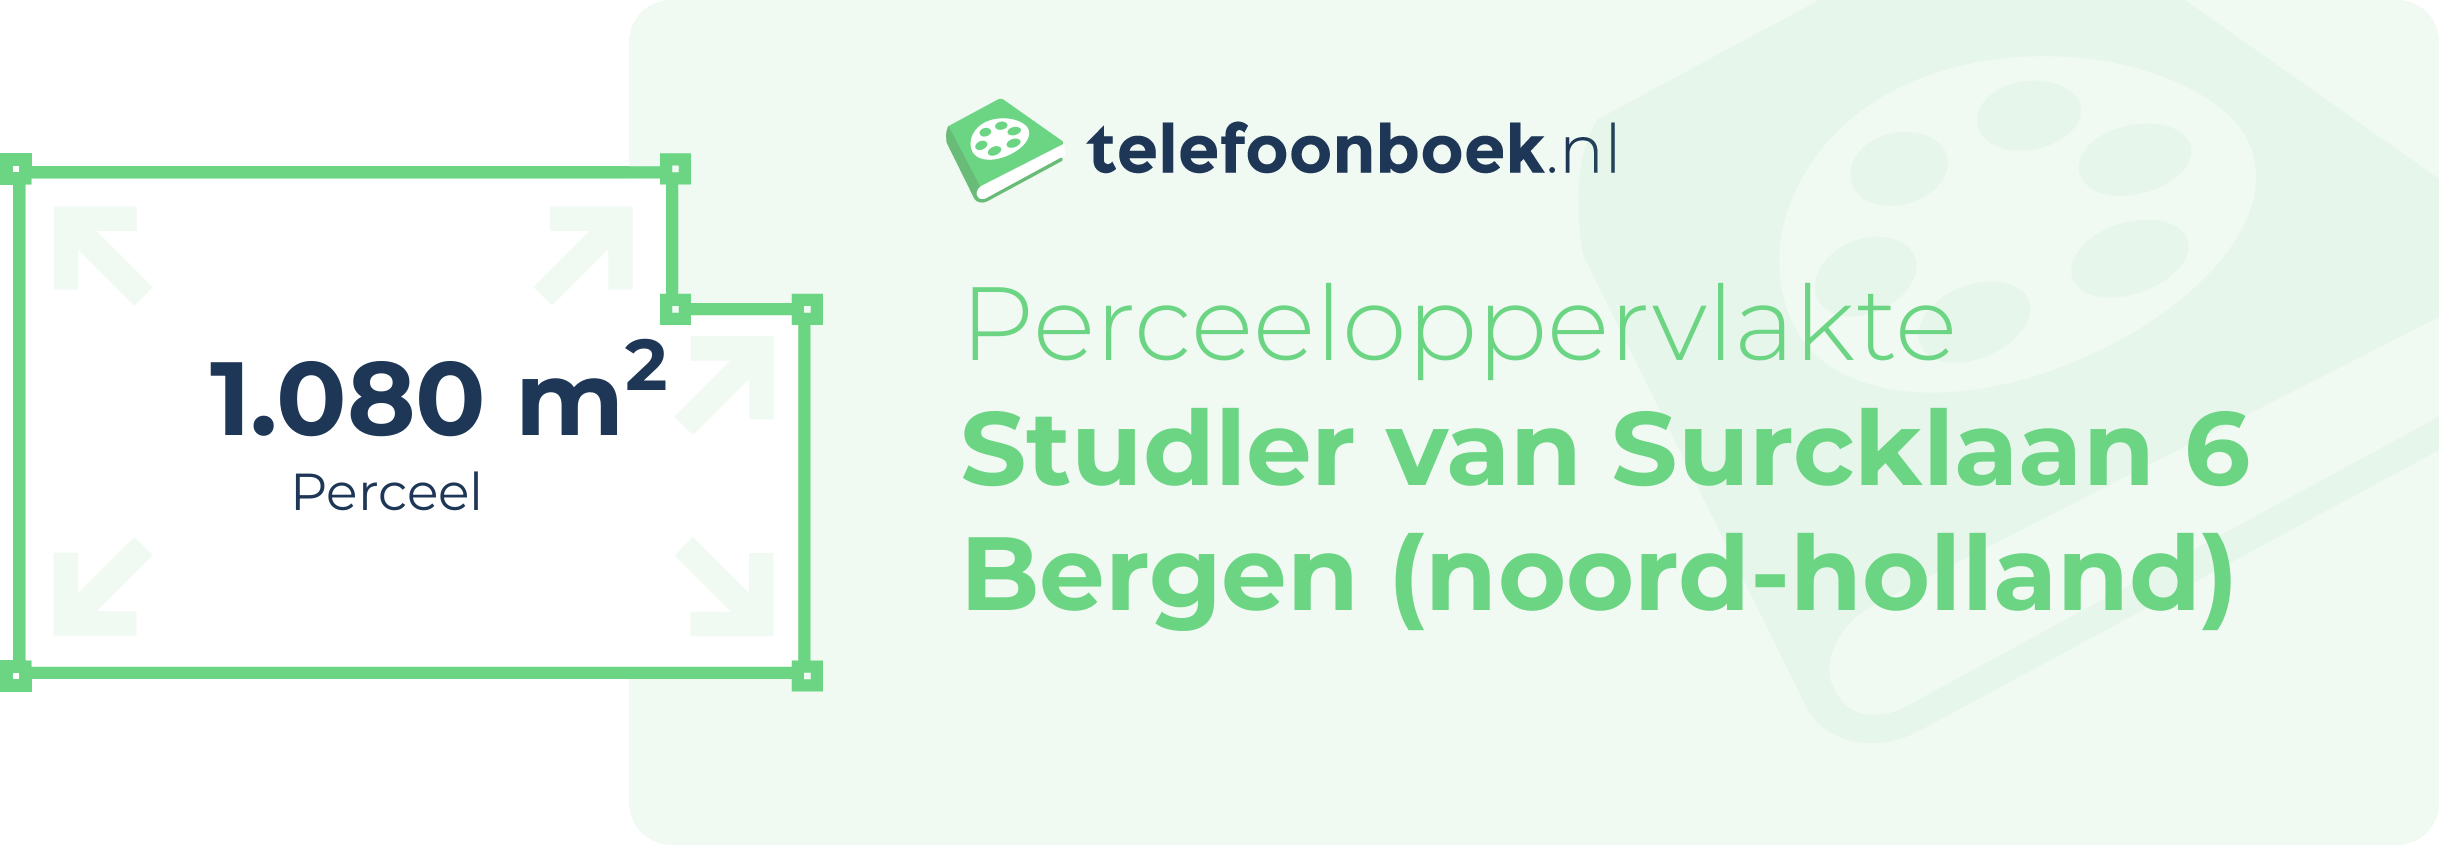 Perceeloppervlakte Studler Van Surcklaan 6 Bergen (Noord-Holland)